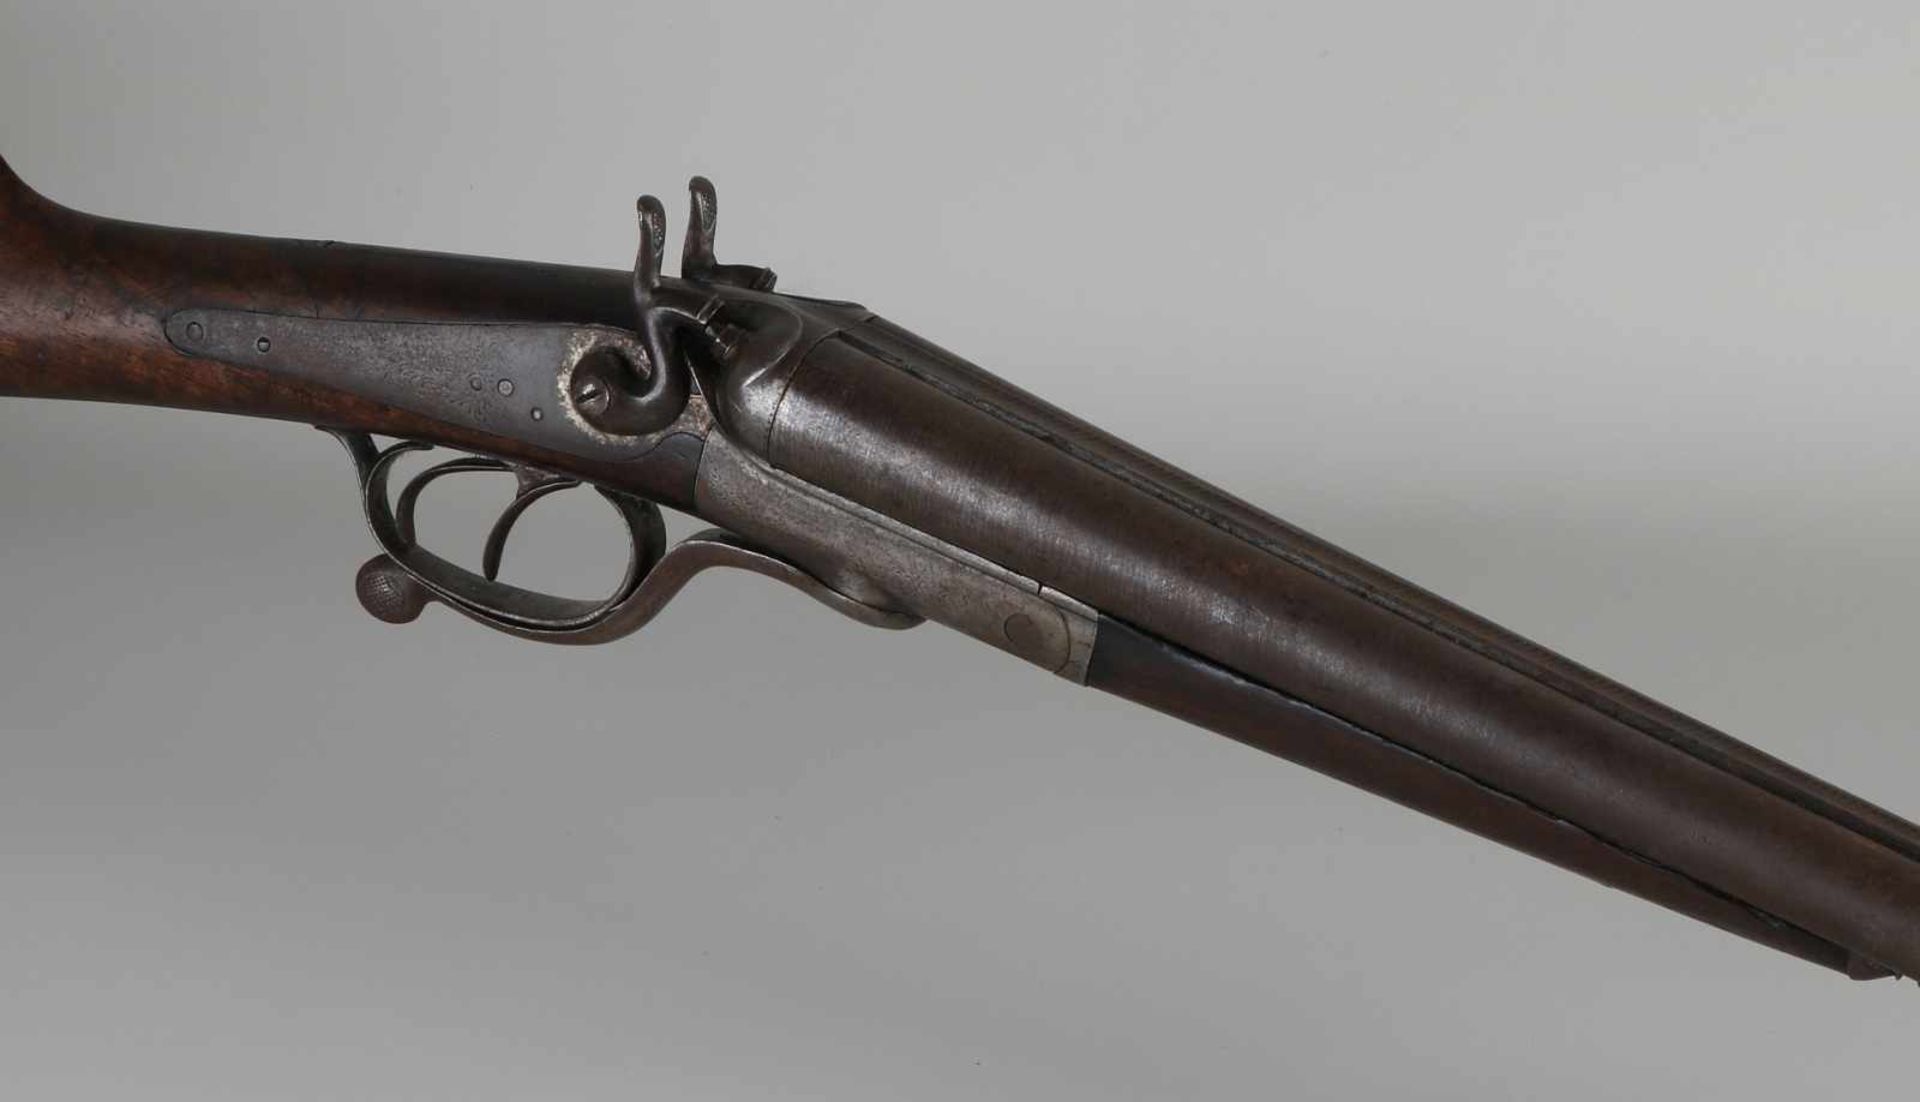 Doppelläufiges Jagdgewehr aus dem 19. Jahrhundert mit Gravuren und Quecksilberlauf. Größe: L 111 - Image 2 of 2